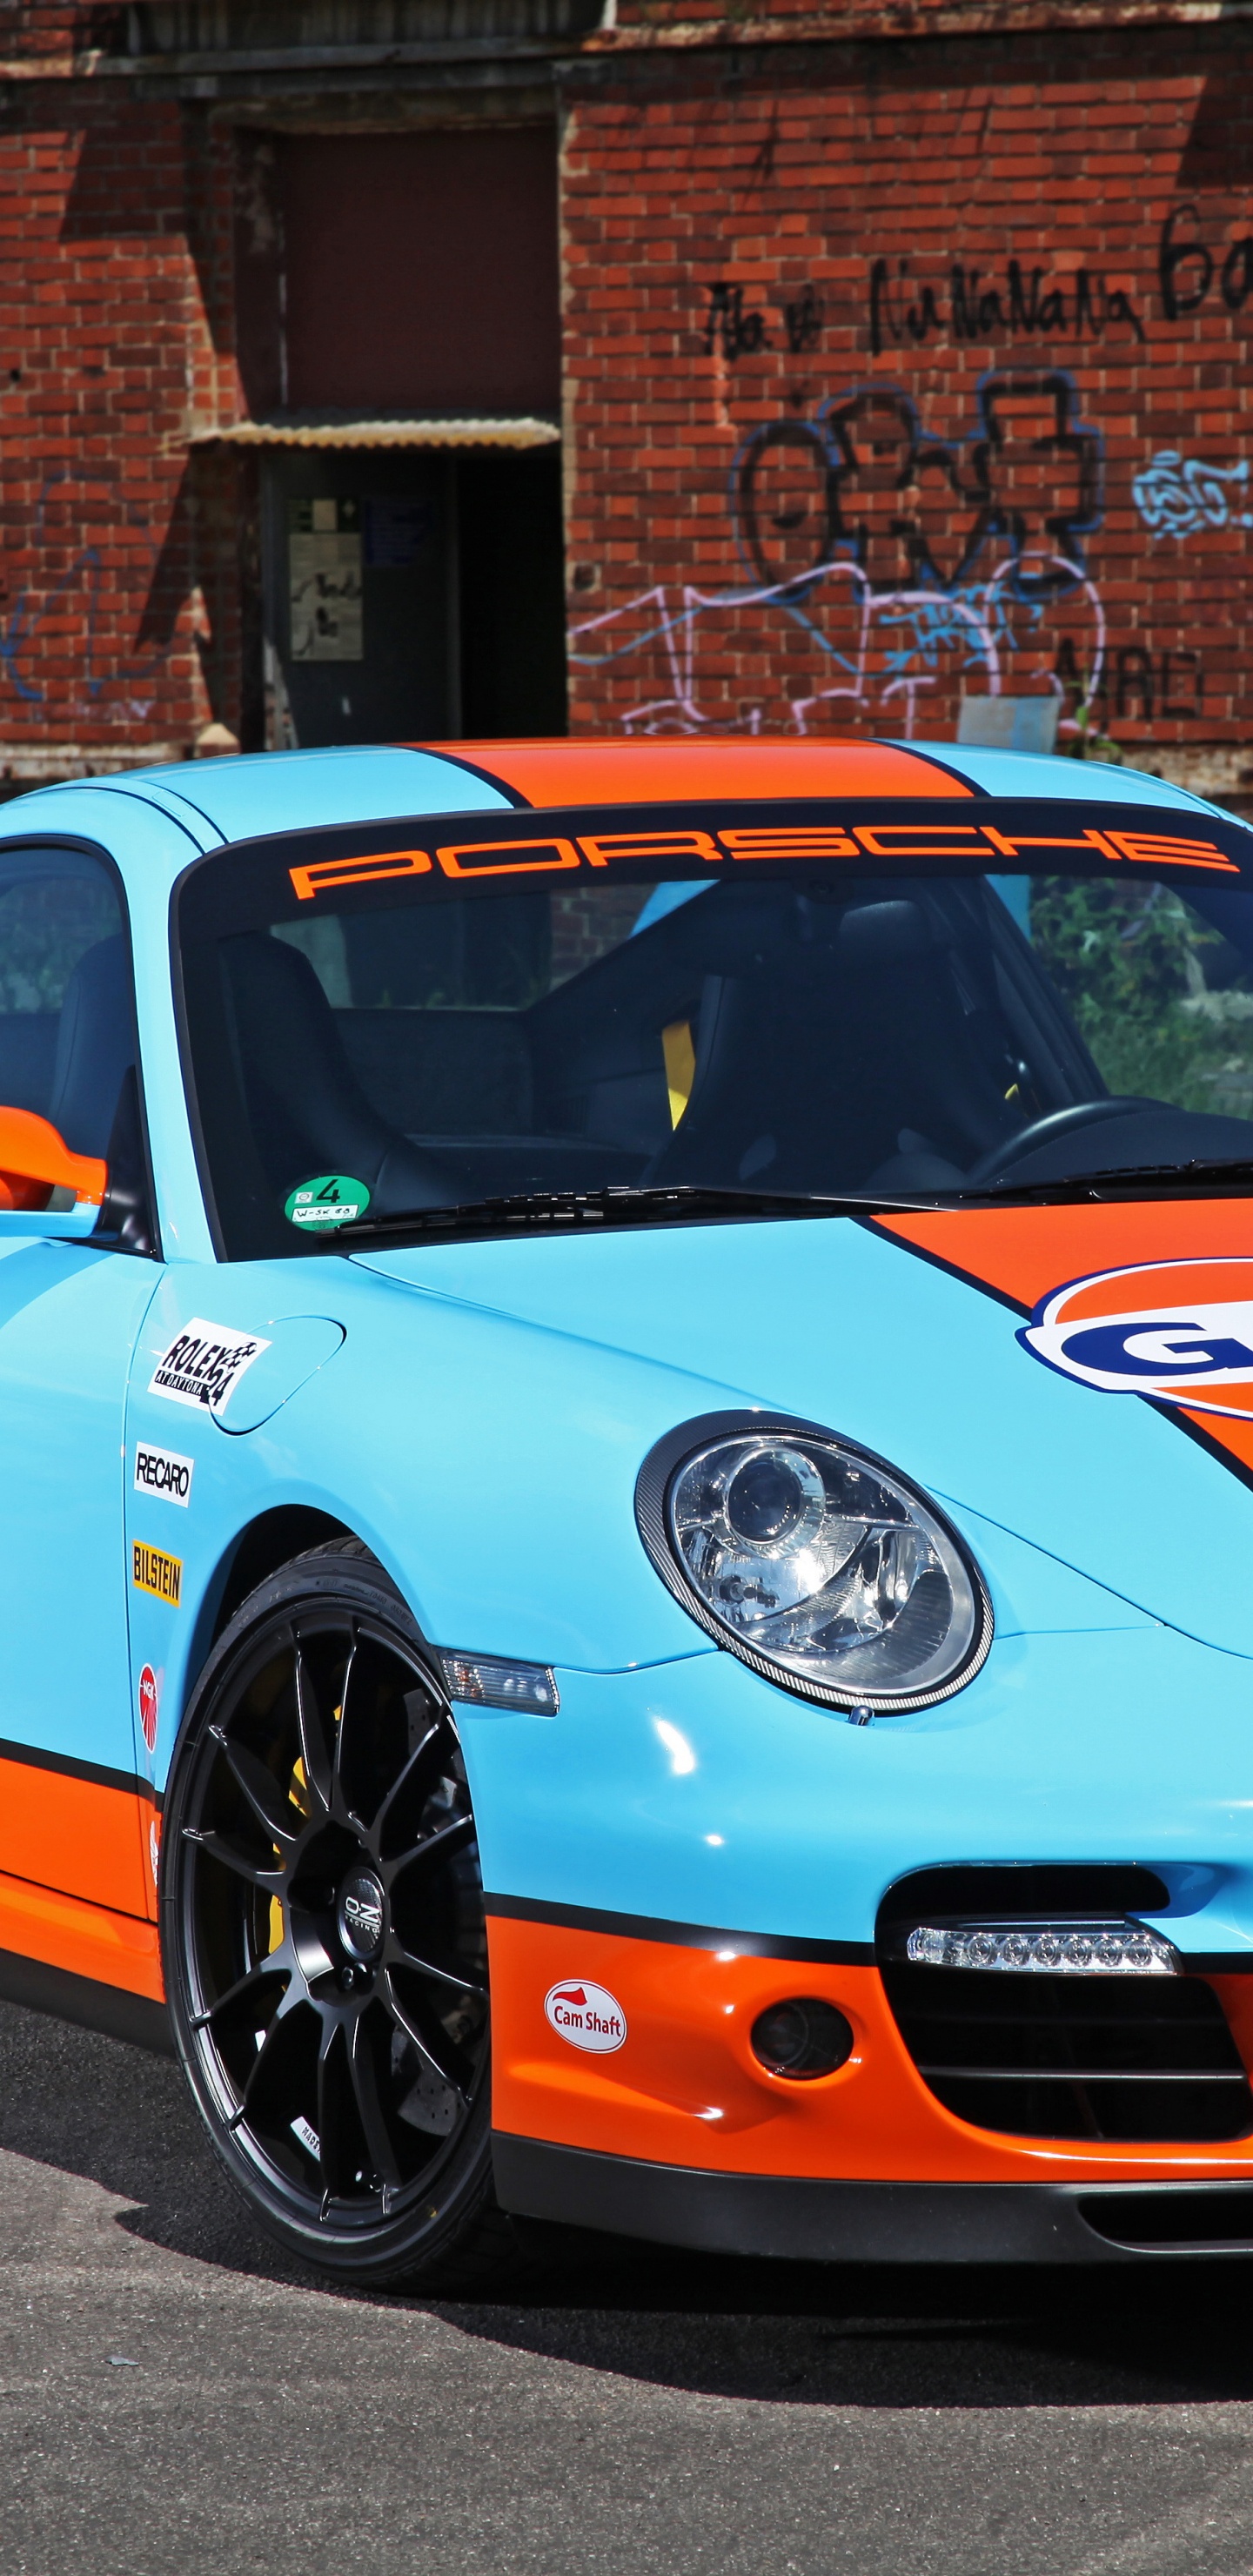 Porsche 911 Azul y Blanco Estacionado Cerca Del Edificio de Ladrillo Marrón Durante el Día. Wallpaper in 1440x2960 Resolution